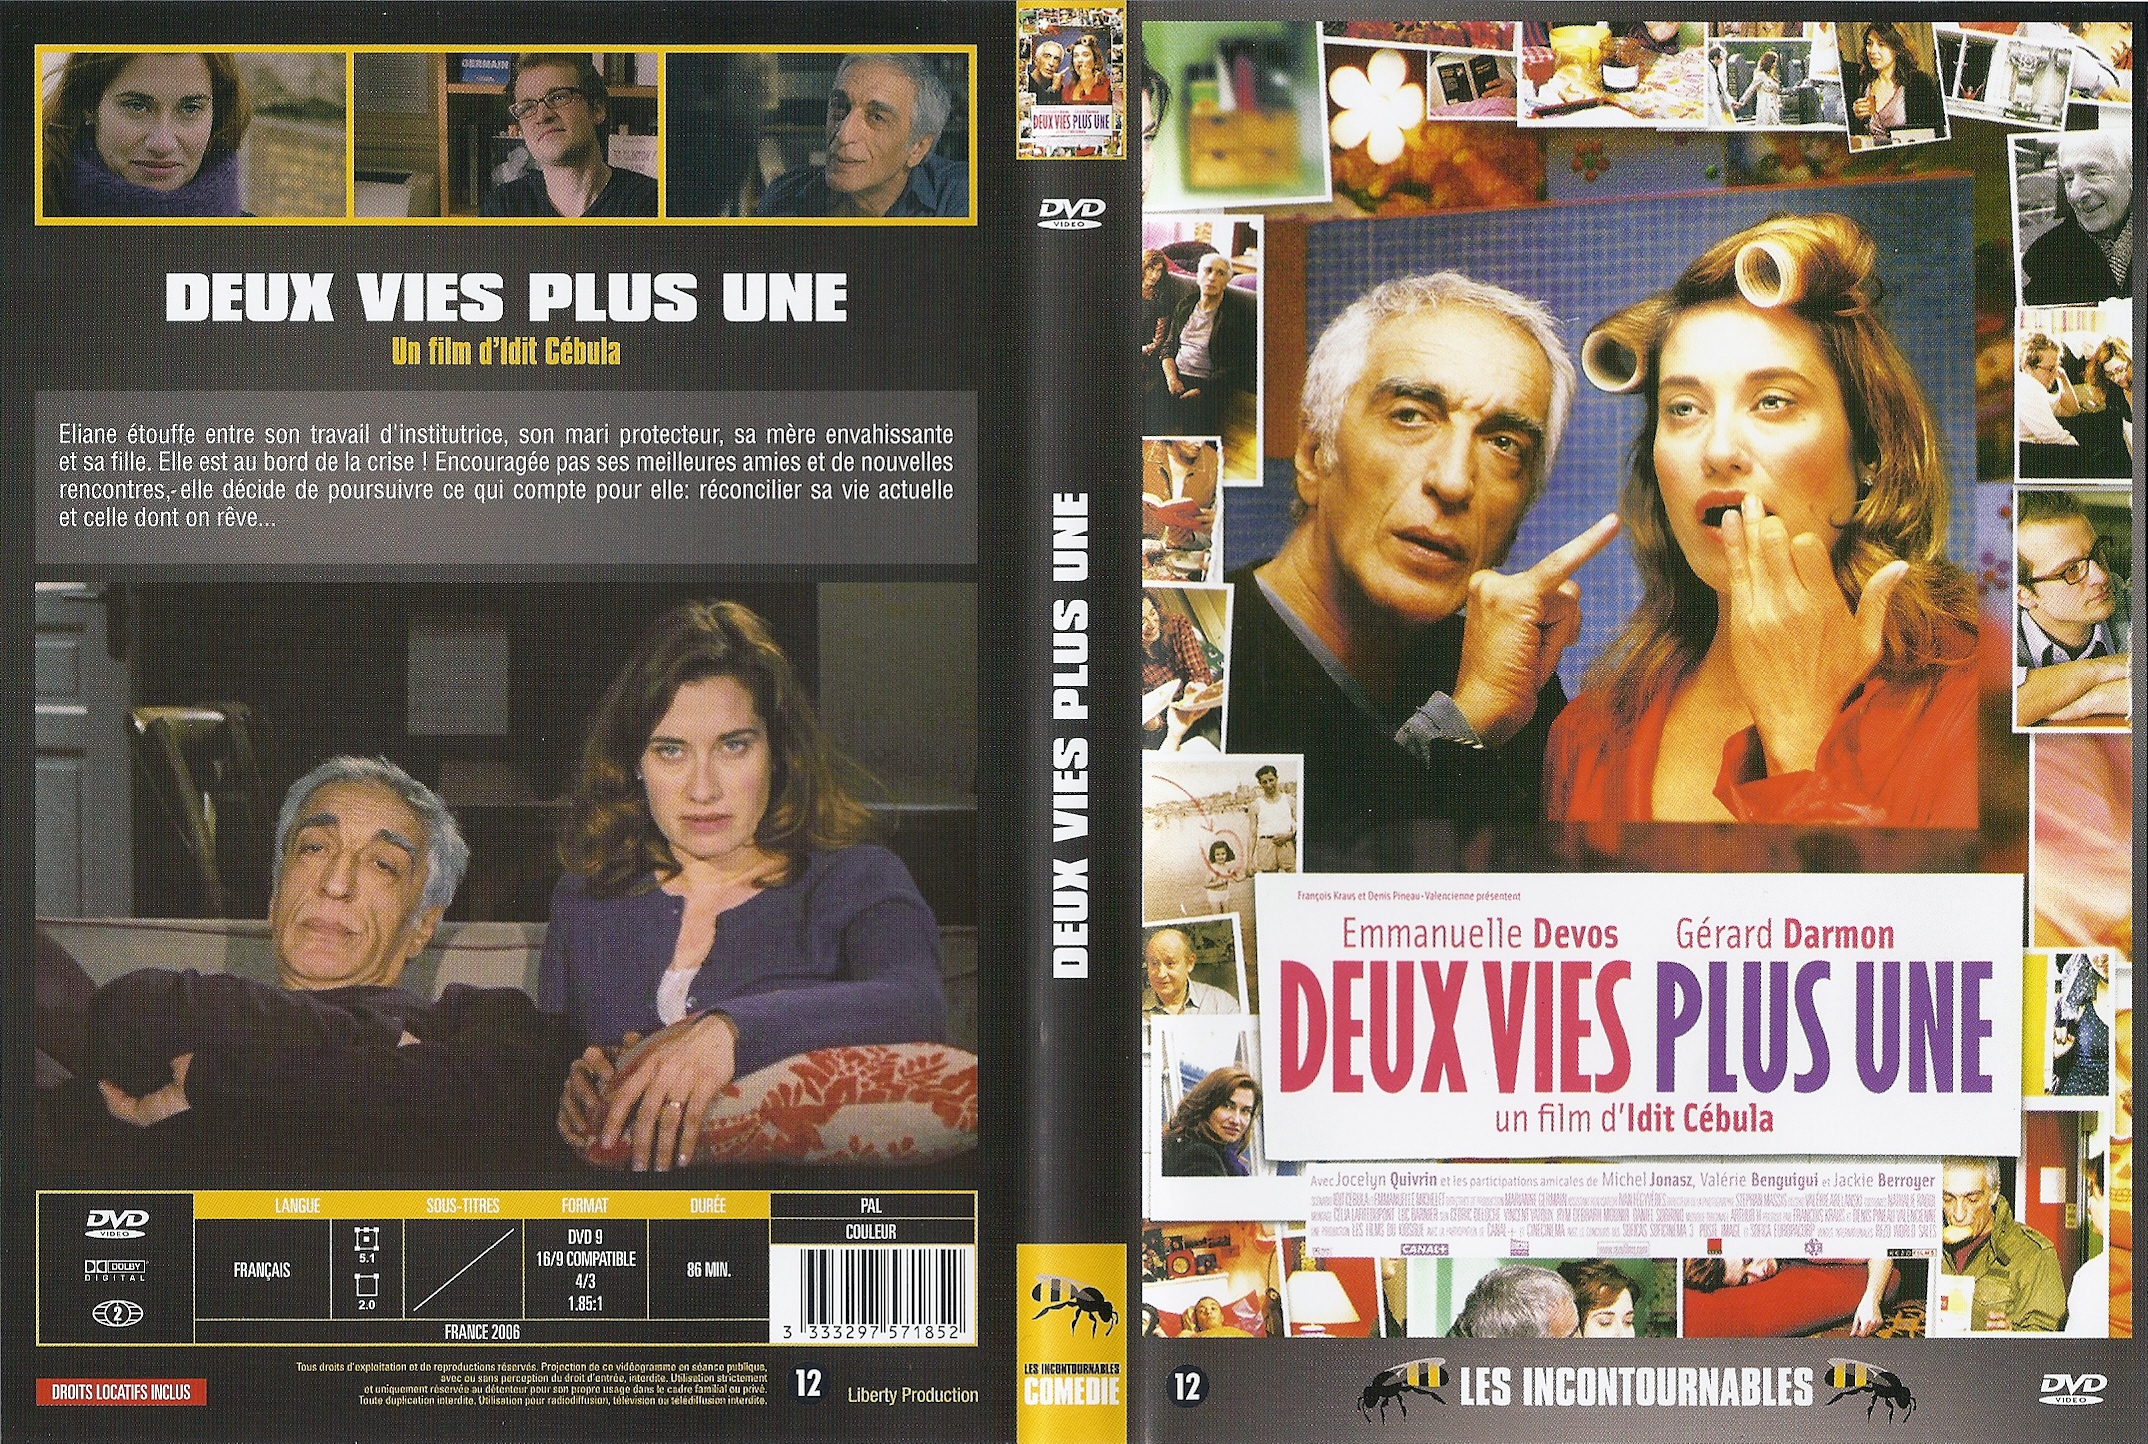 Jaquette DVD Deux vies plus une v2